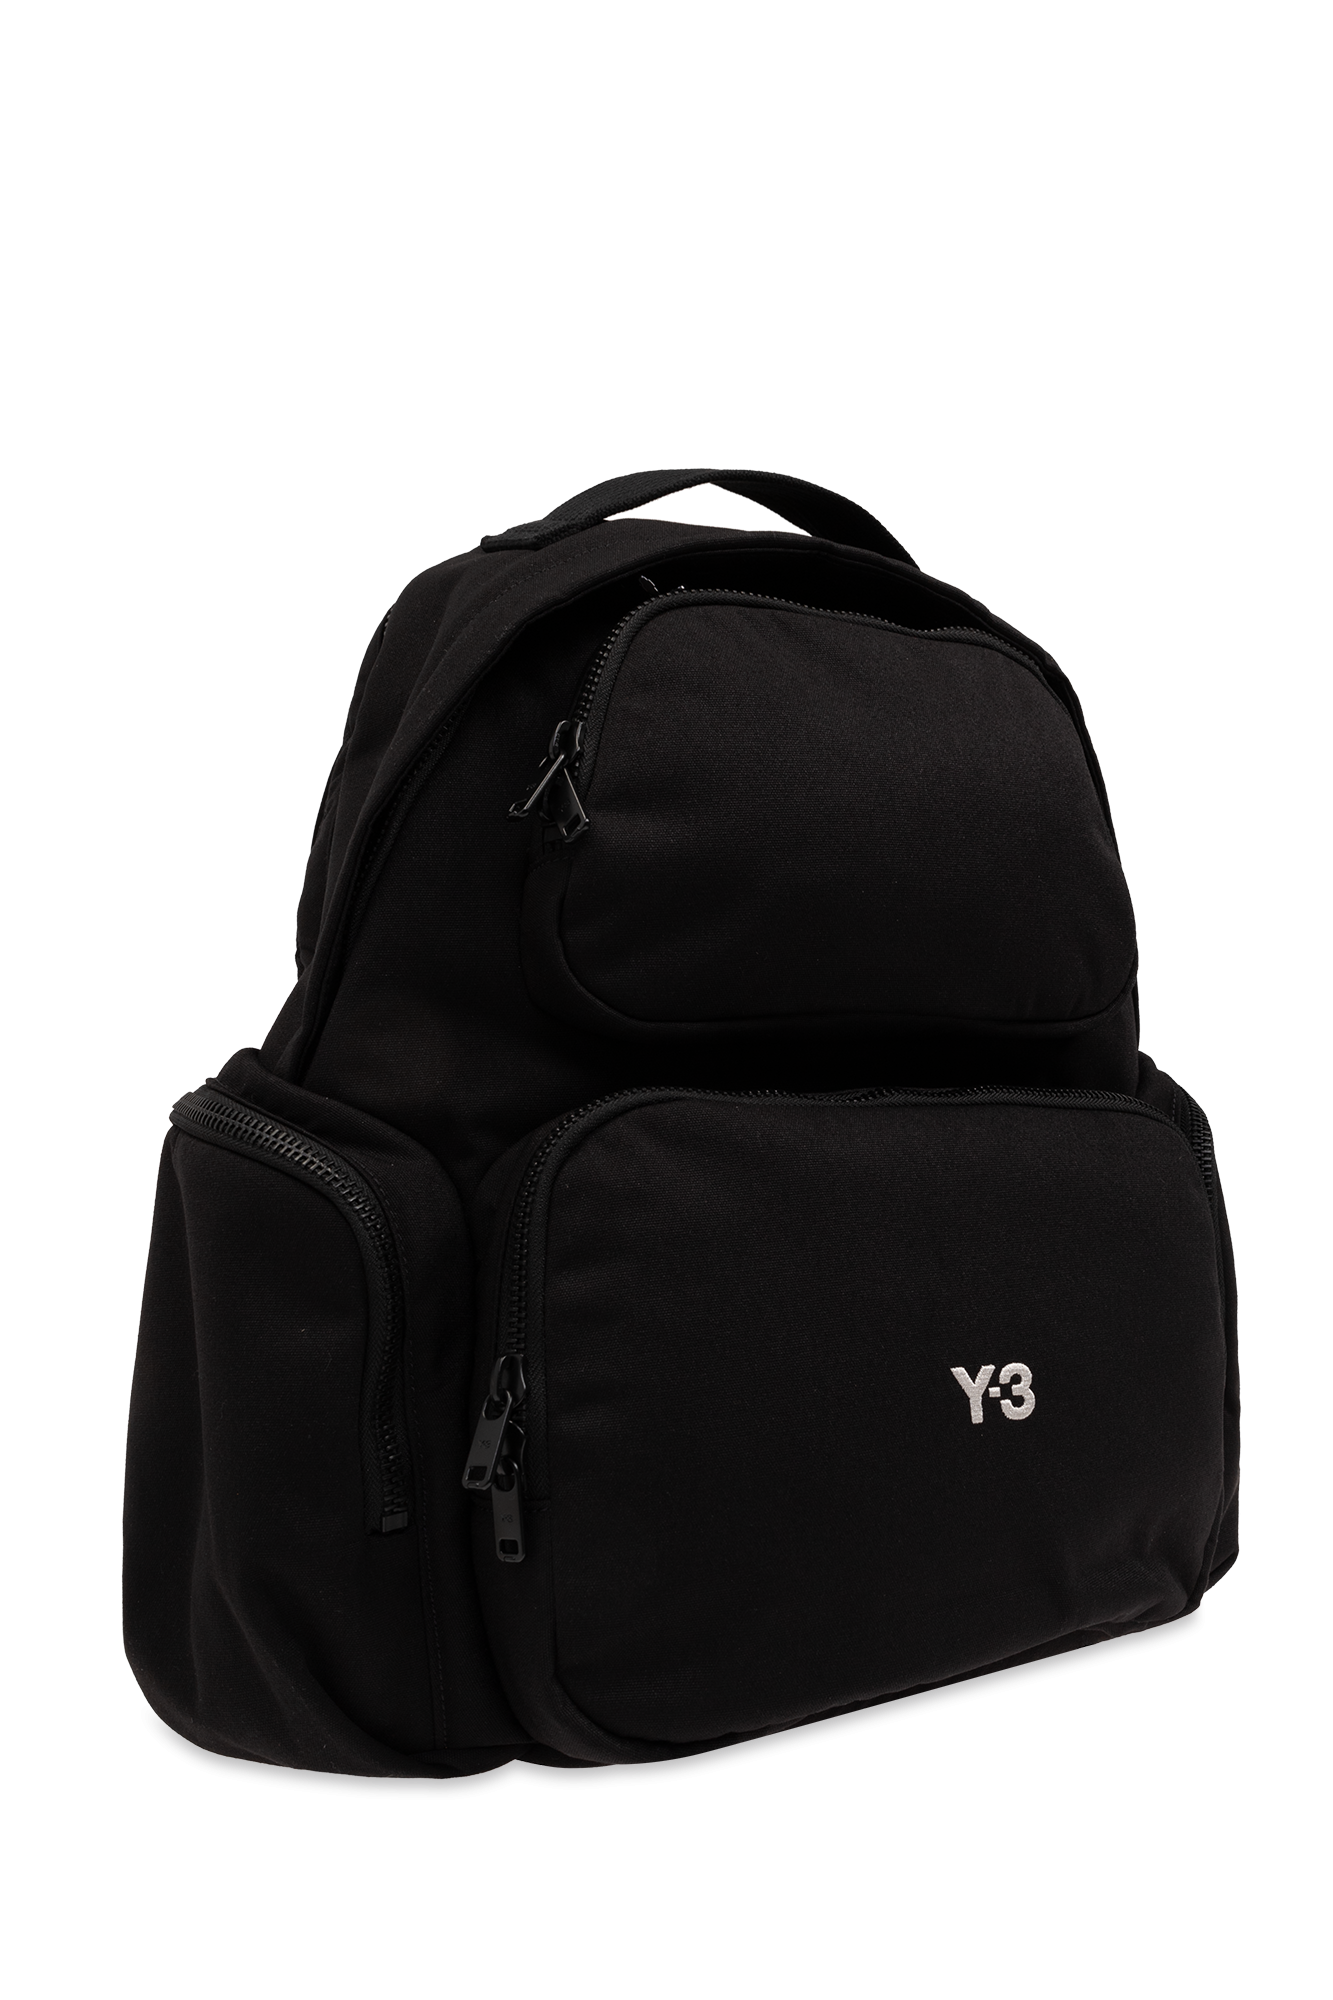 Black Backpack with logo Y-3 Yohji Yamamoto - Vitkac GB